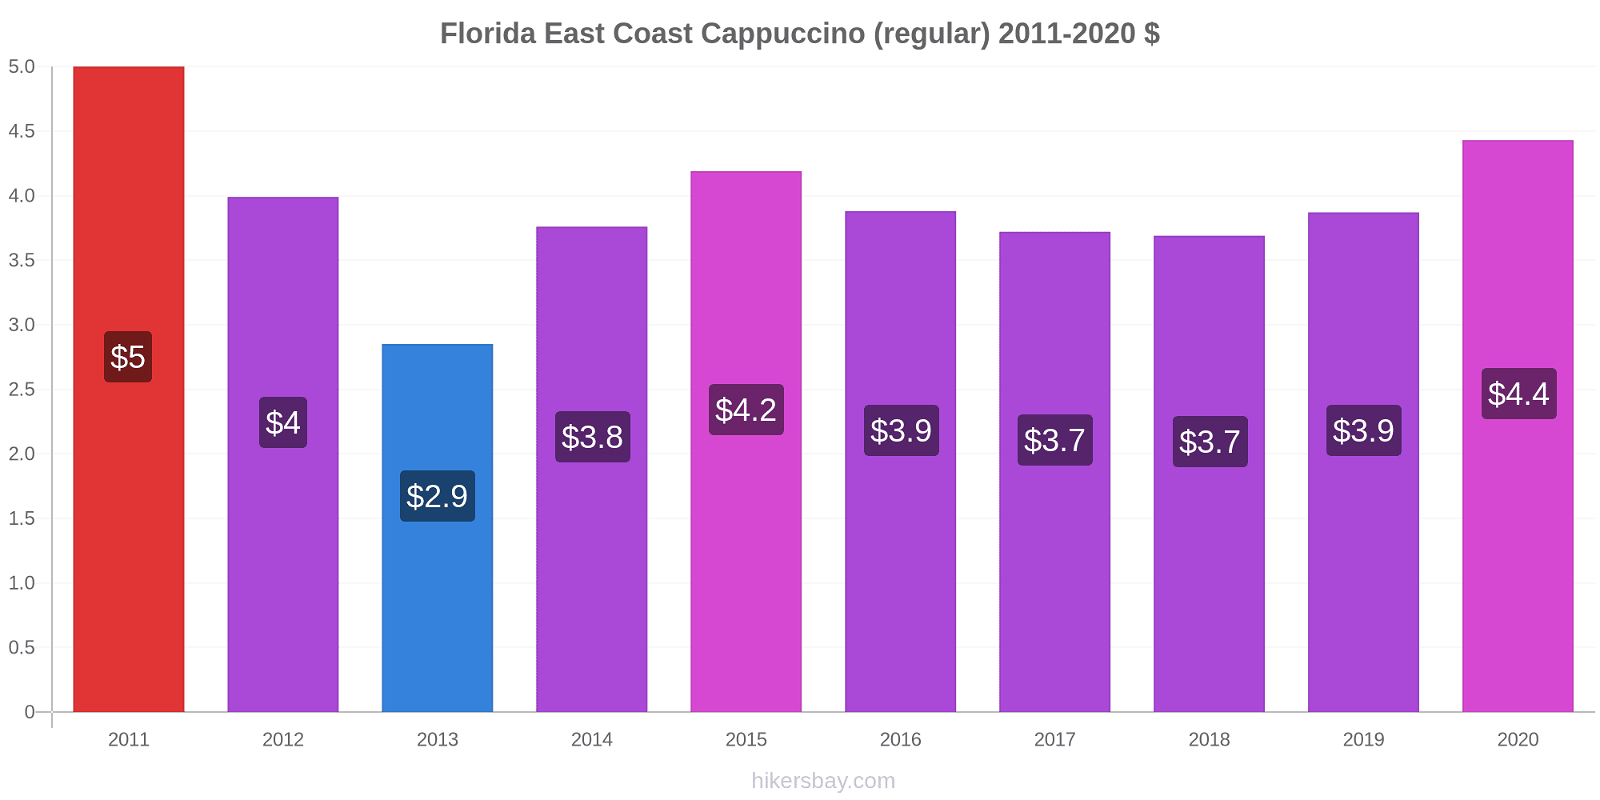 Florida East Coast variação de preço Capuccino (regular) hikersbay.com